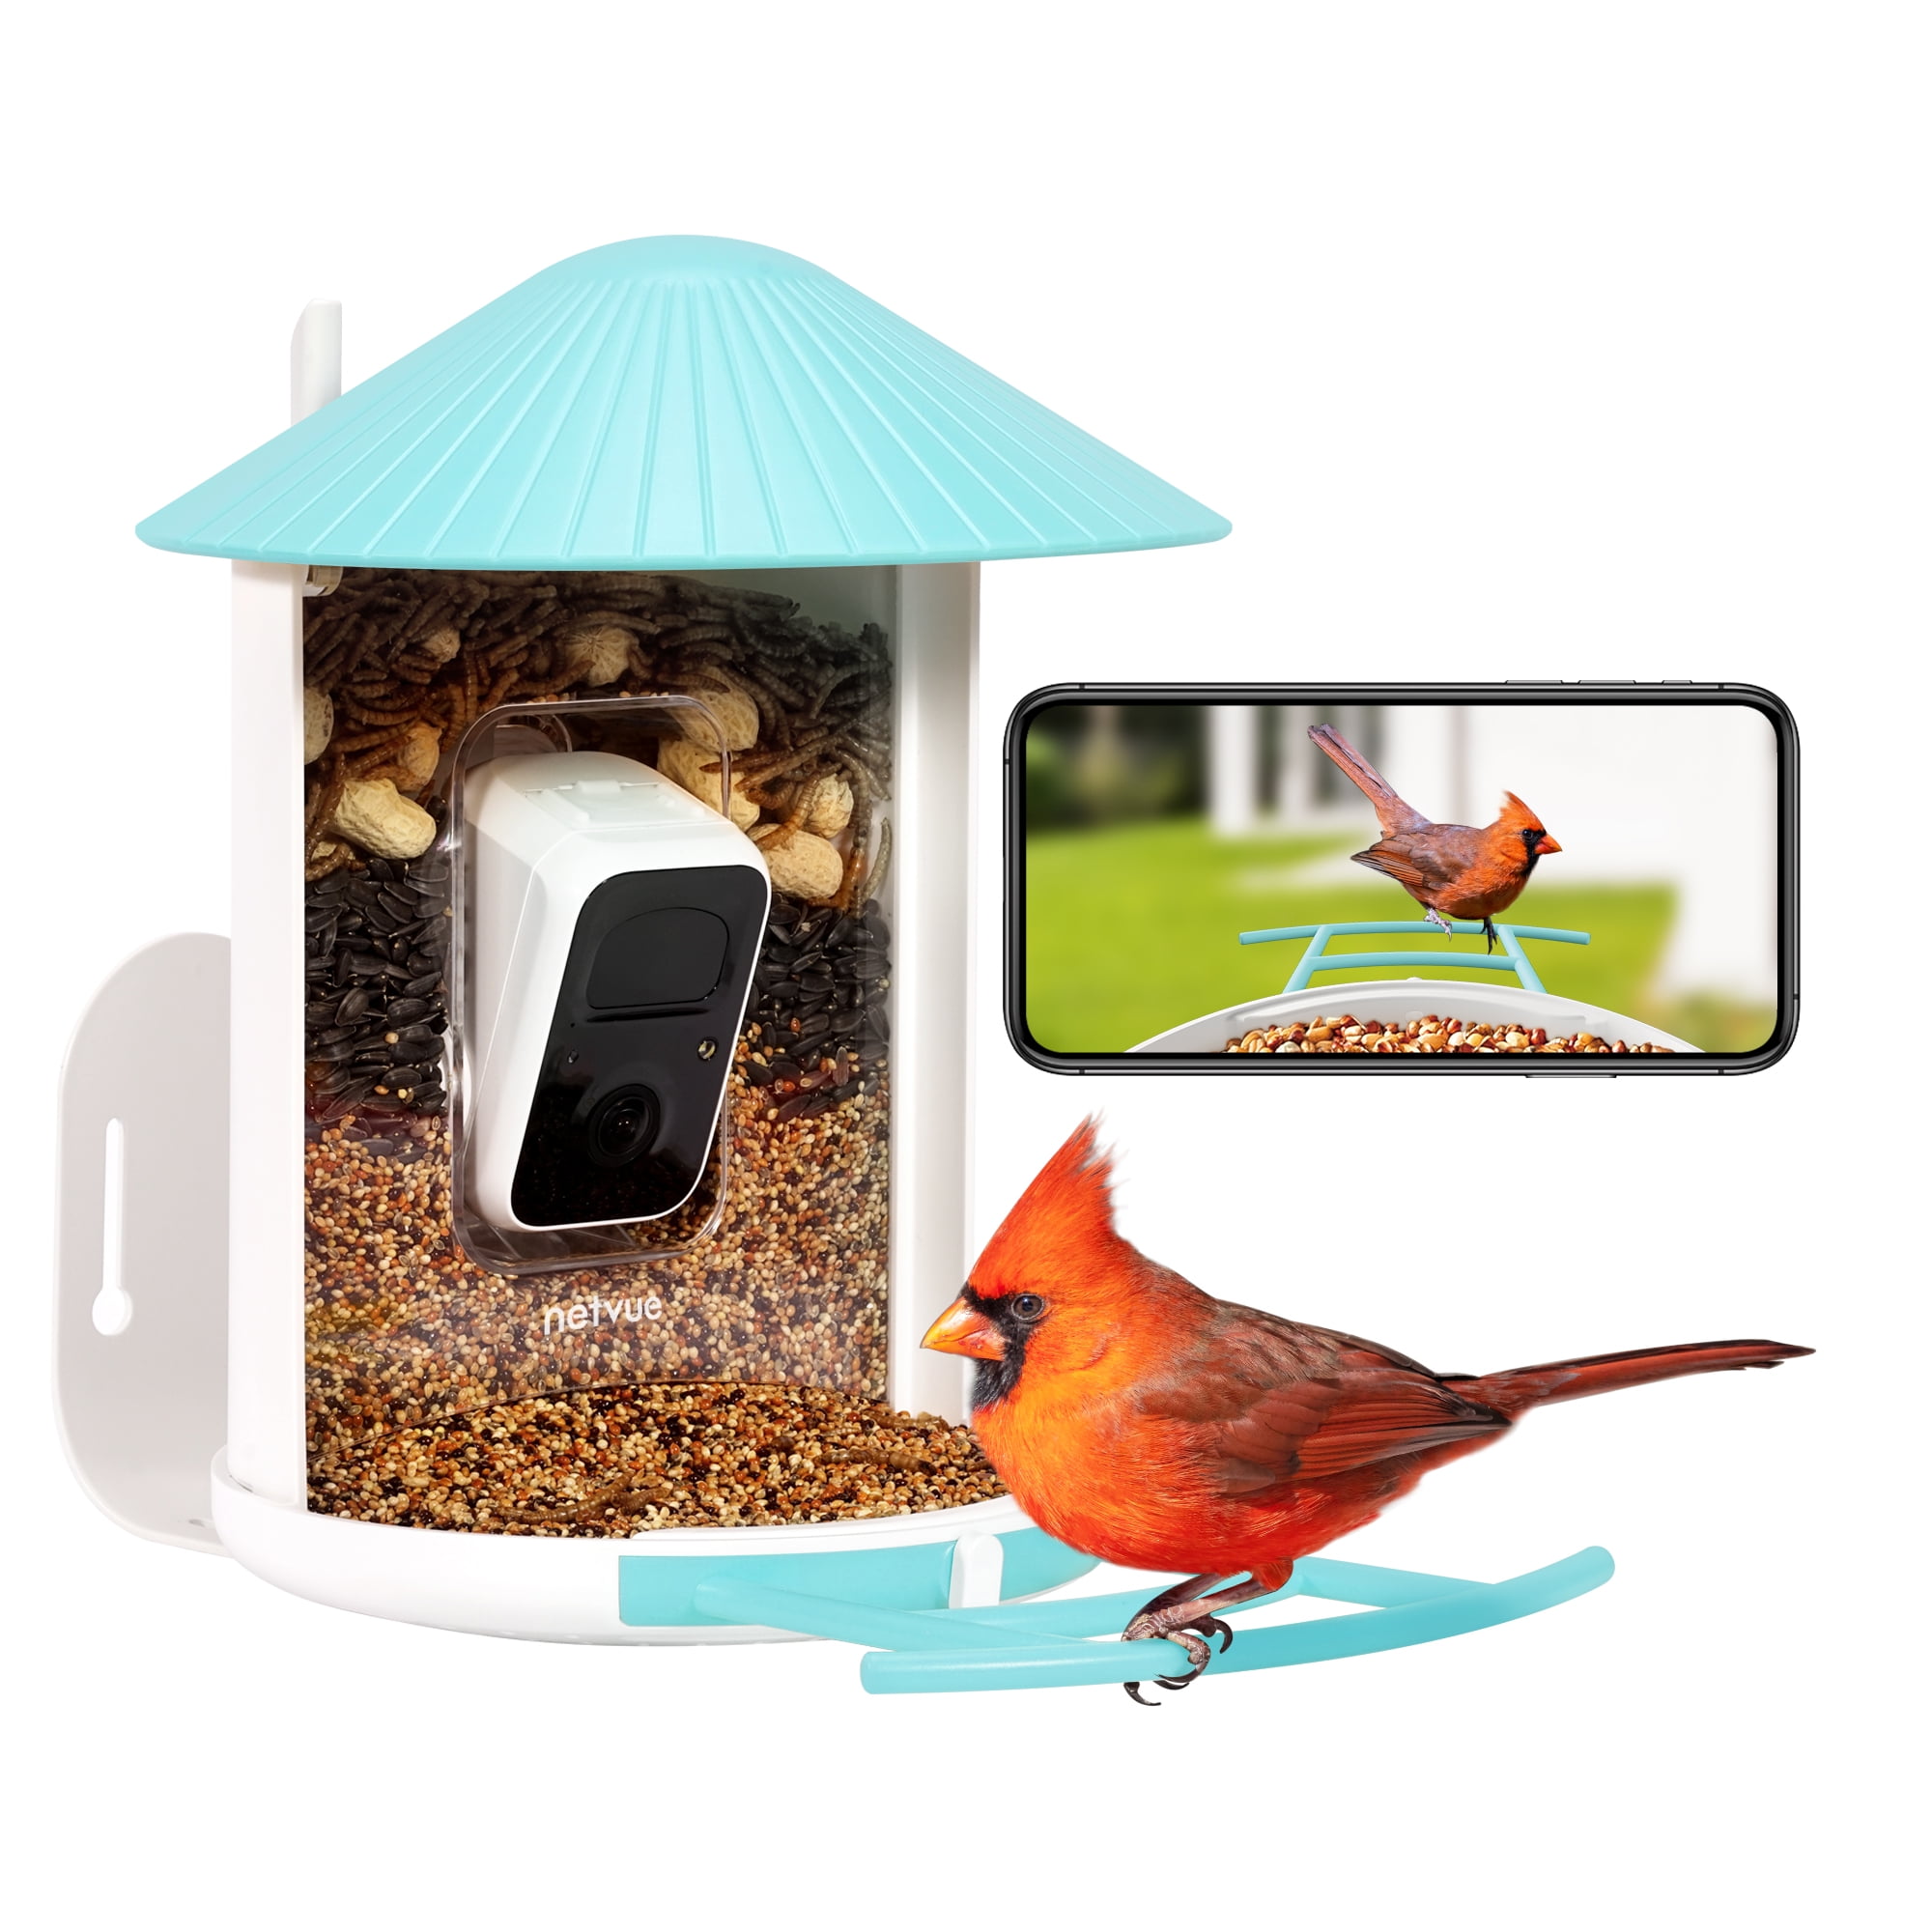 Netvue Birdfy Smart AI Bird Feeder Camera - BirdGuides